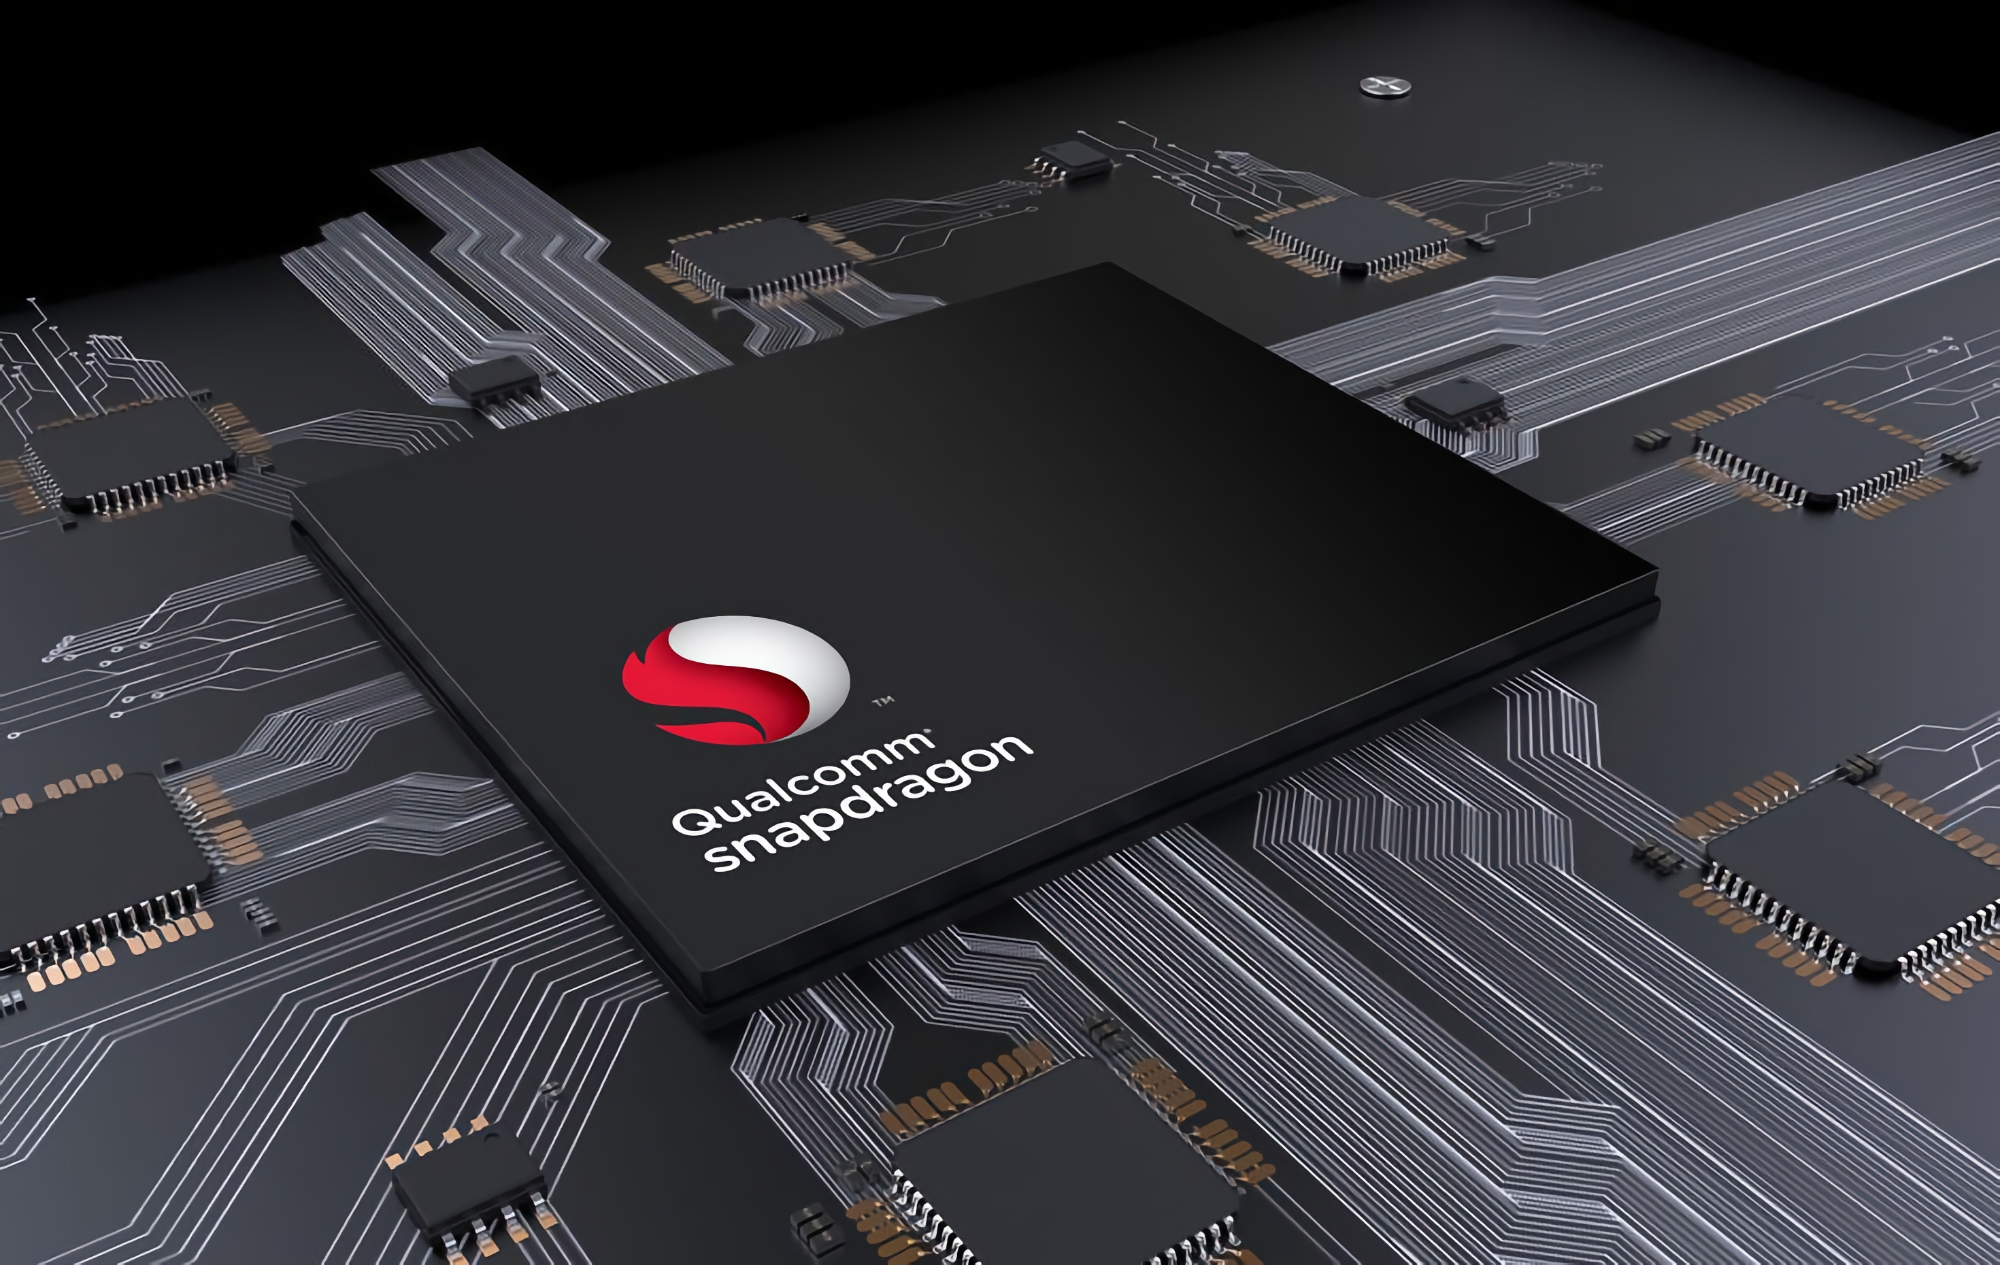 Джерело: Qualcomm поміняє назву нового флагманського чіпа Snapdragon 898 на Snapdragon 8 gen1